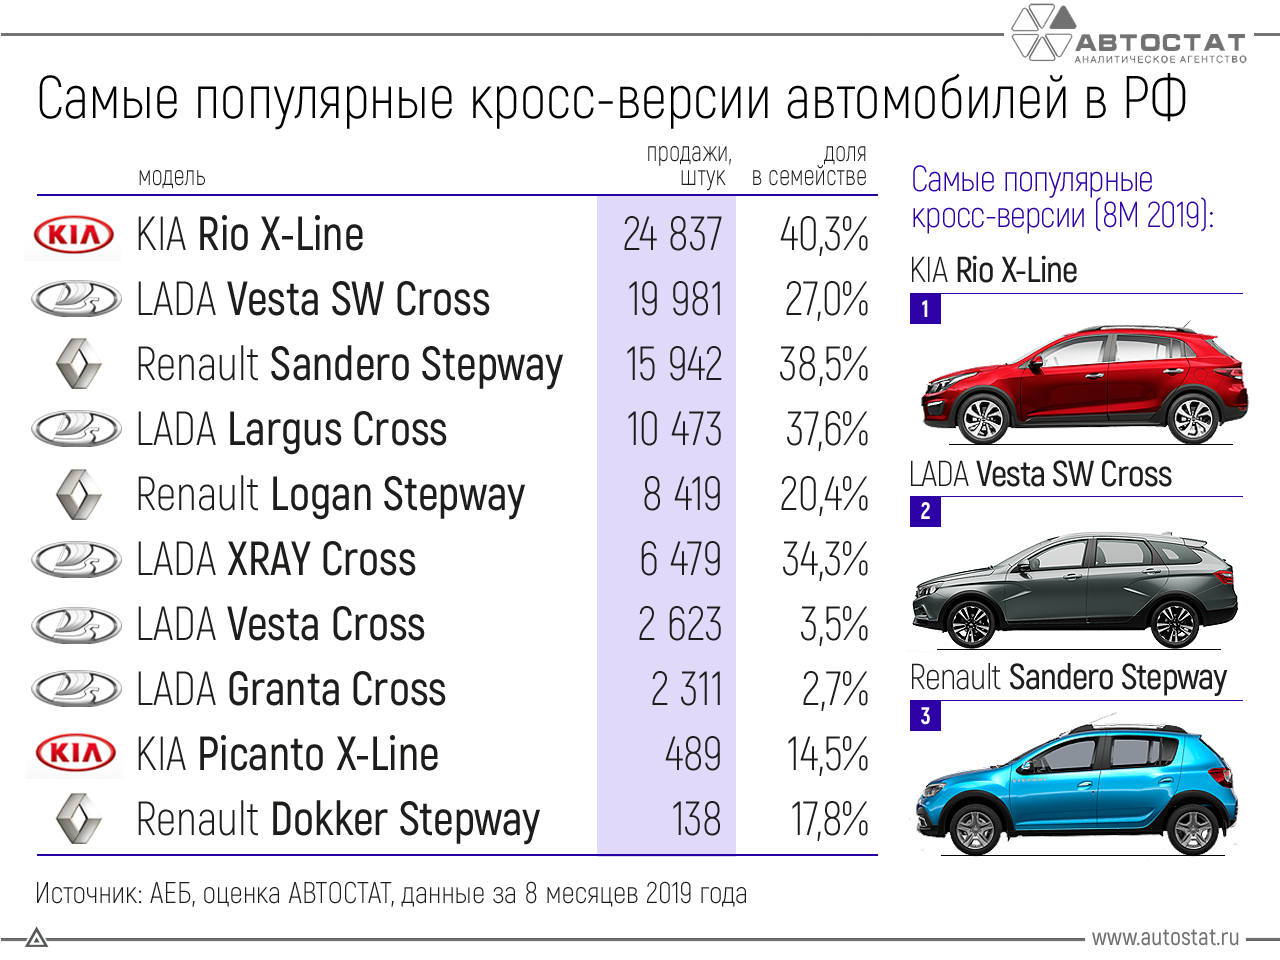 Рейтинг самых надёжных автомобилей российского производства 2021 года